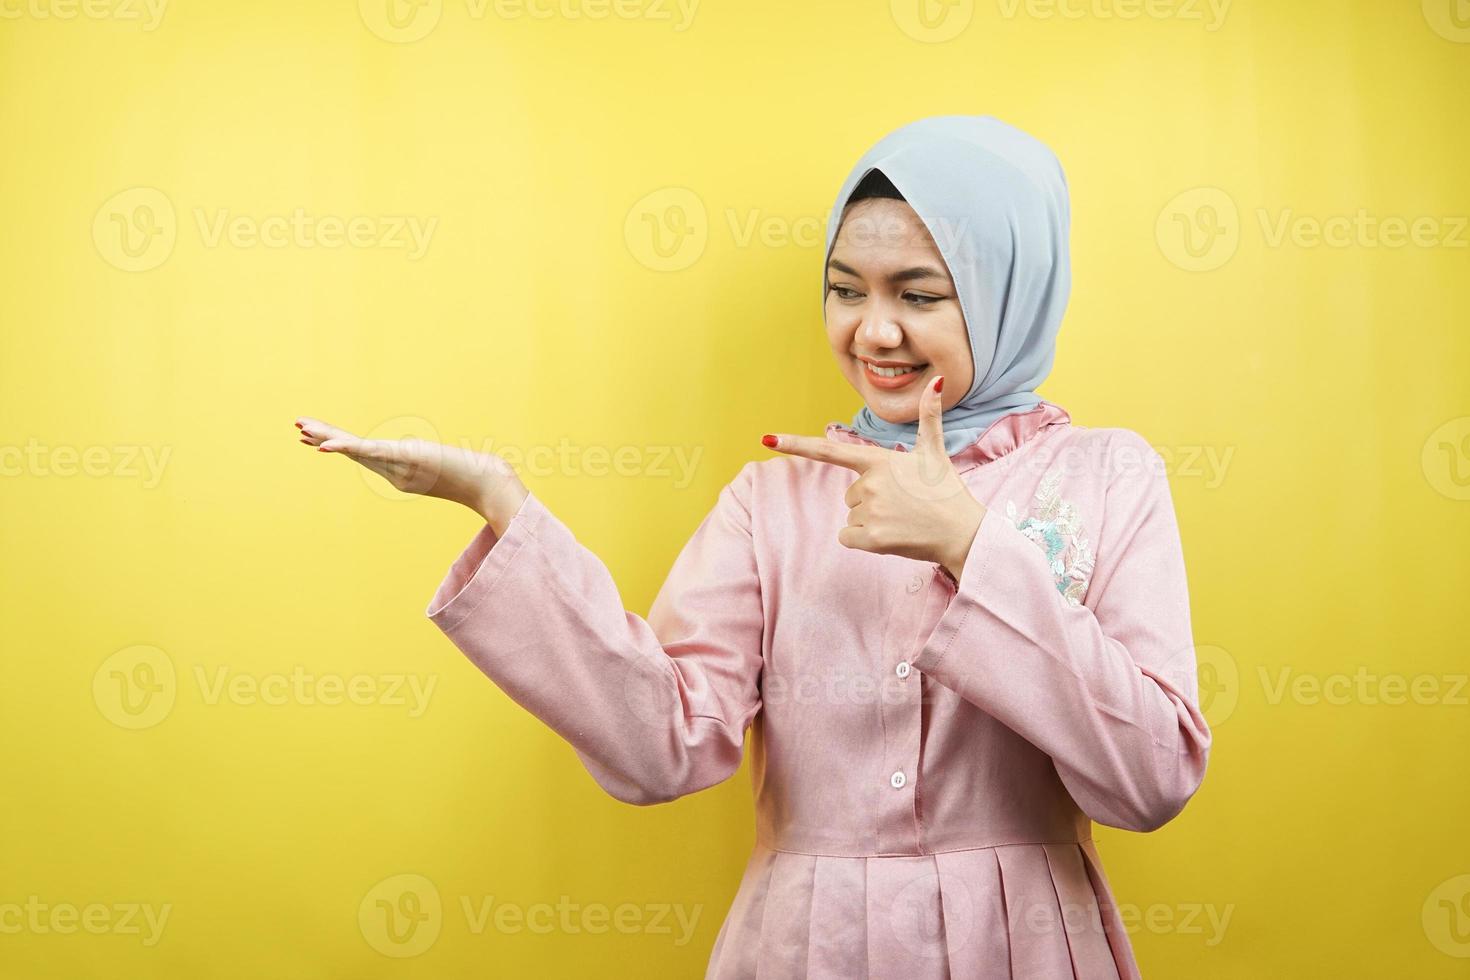 fröhliche schöne junge muslimische Frau, mit der Hand, die auf den leeren Raum zeigt, etwas fördert, isoliert foto